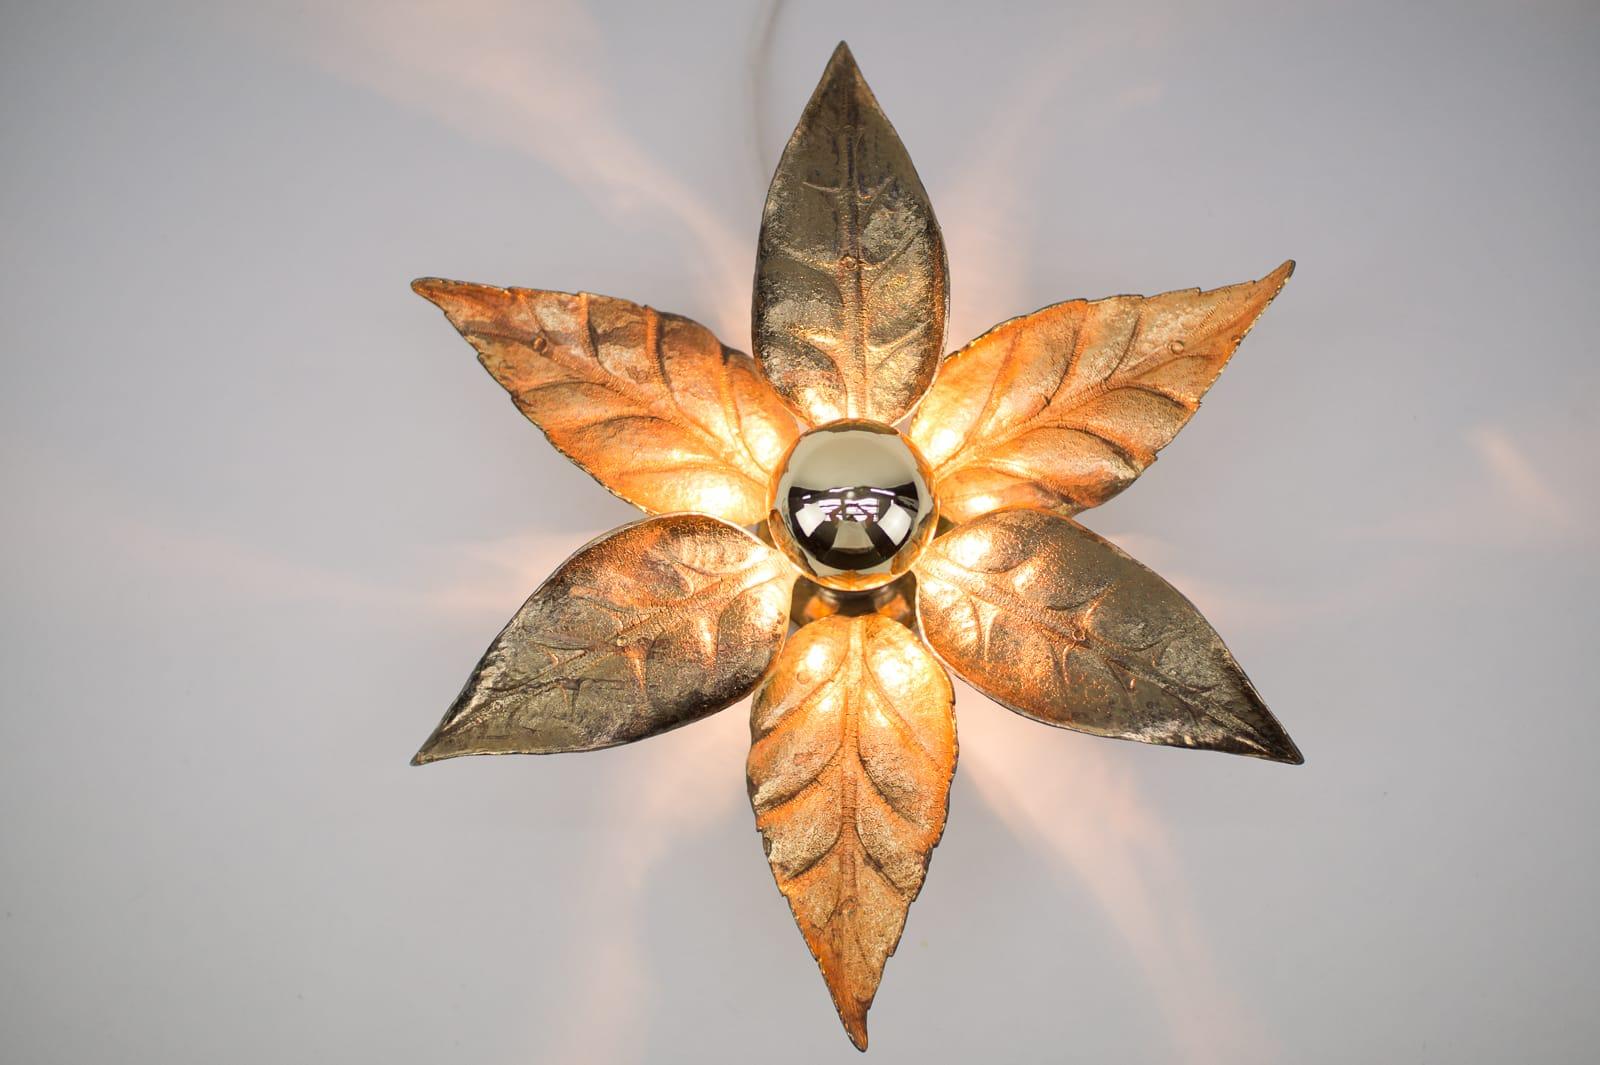 Ein goldener Wandleuchter oder eine Wandleuchte des belgischen Designers Willy Daro für den Leuchtenhersteller Massive. Sie hat eine wunderbare naturalistische Form und ist sehr dekorativ aus der Zeit der 1970er Jahre.

Die Doppellampe ist 75cm lang